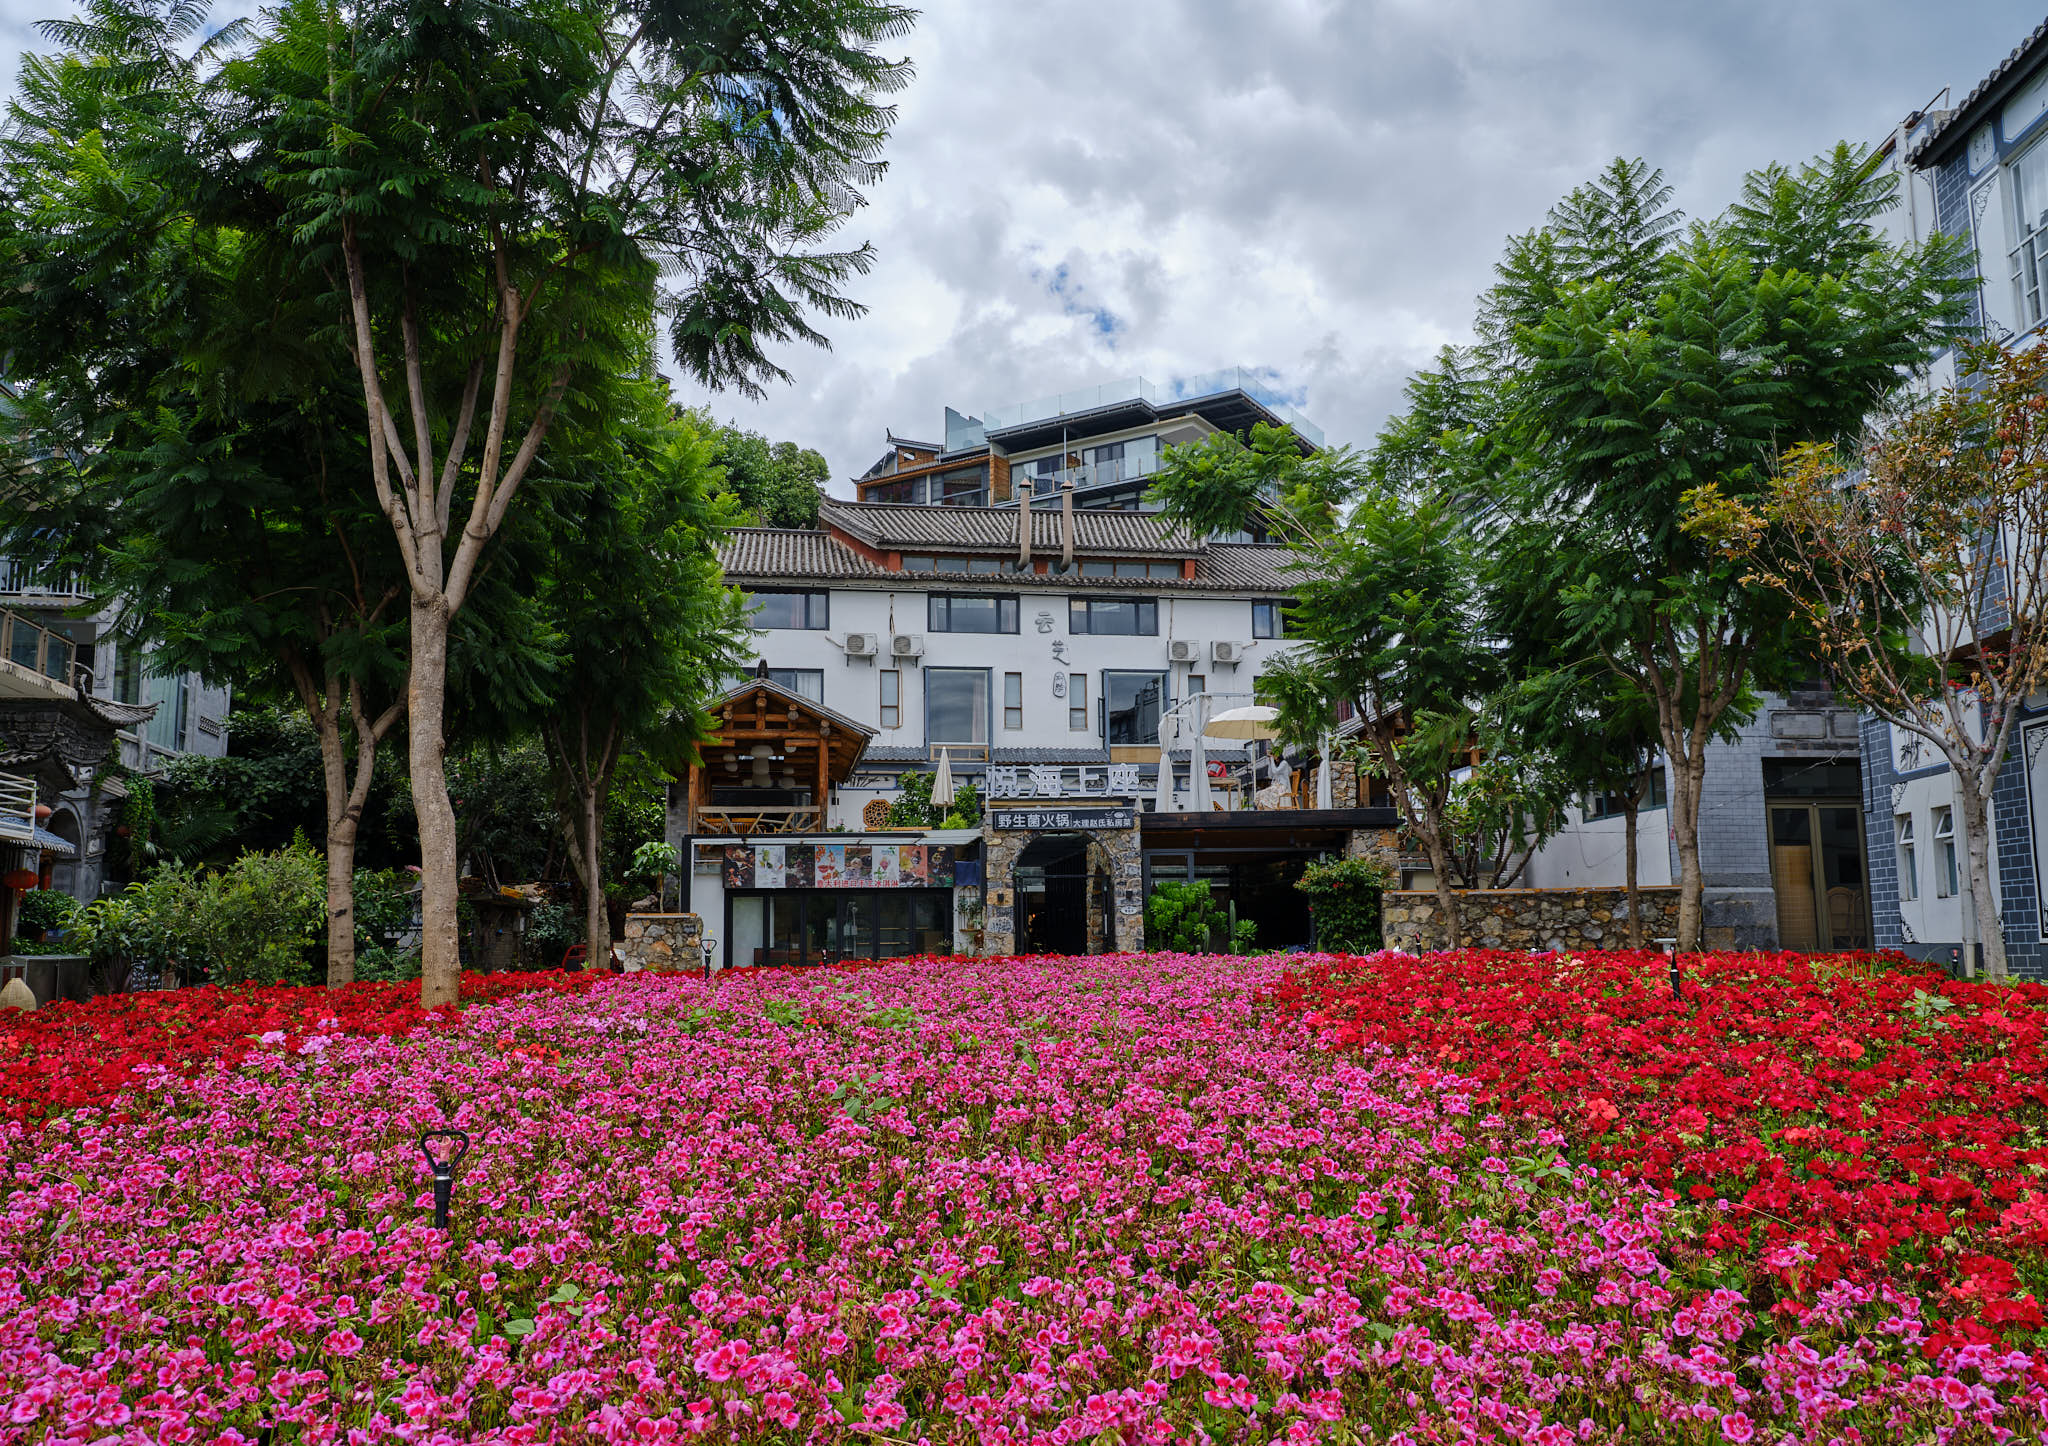 Colourful garden in Shuanglang